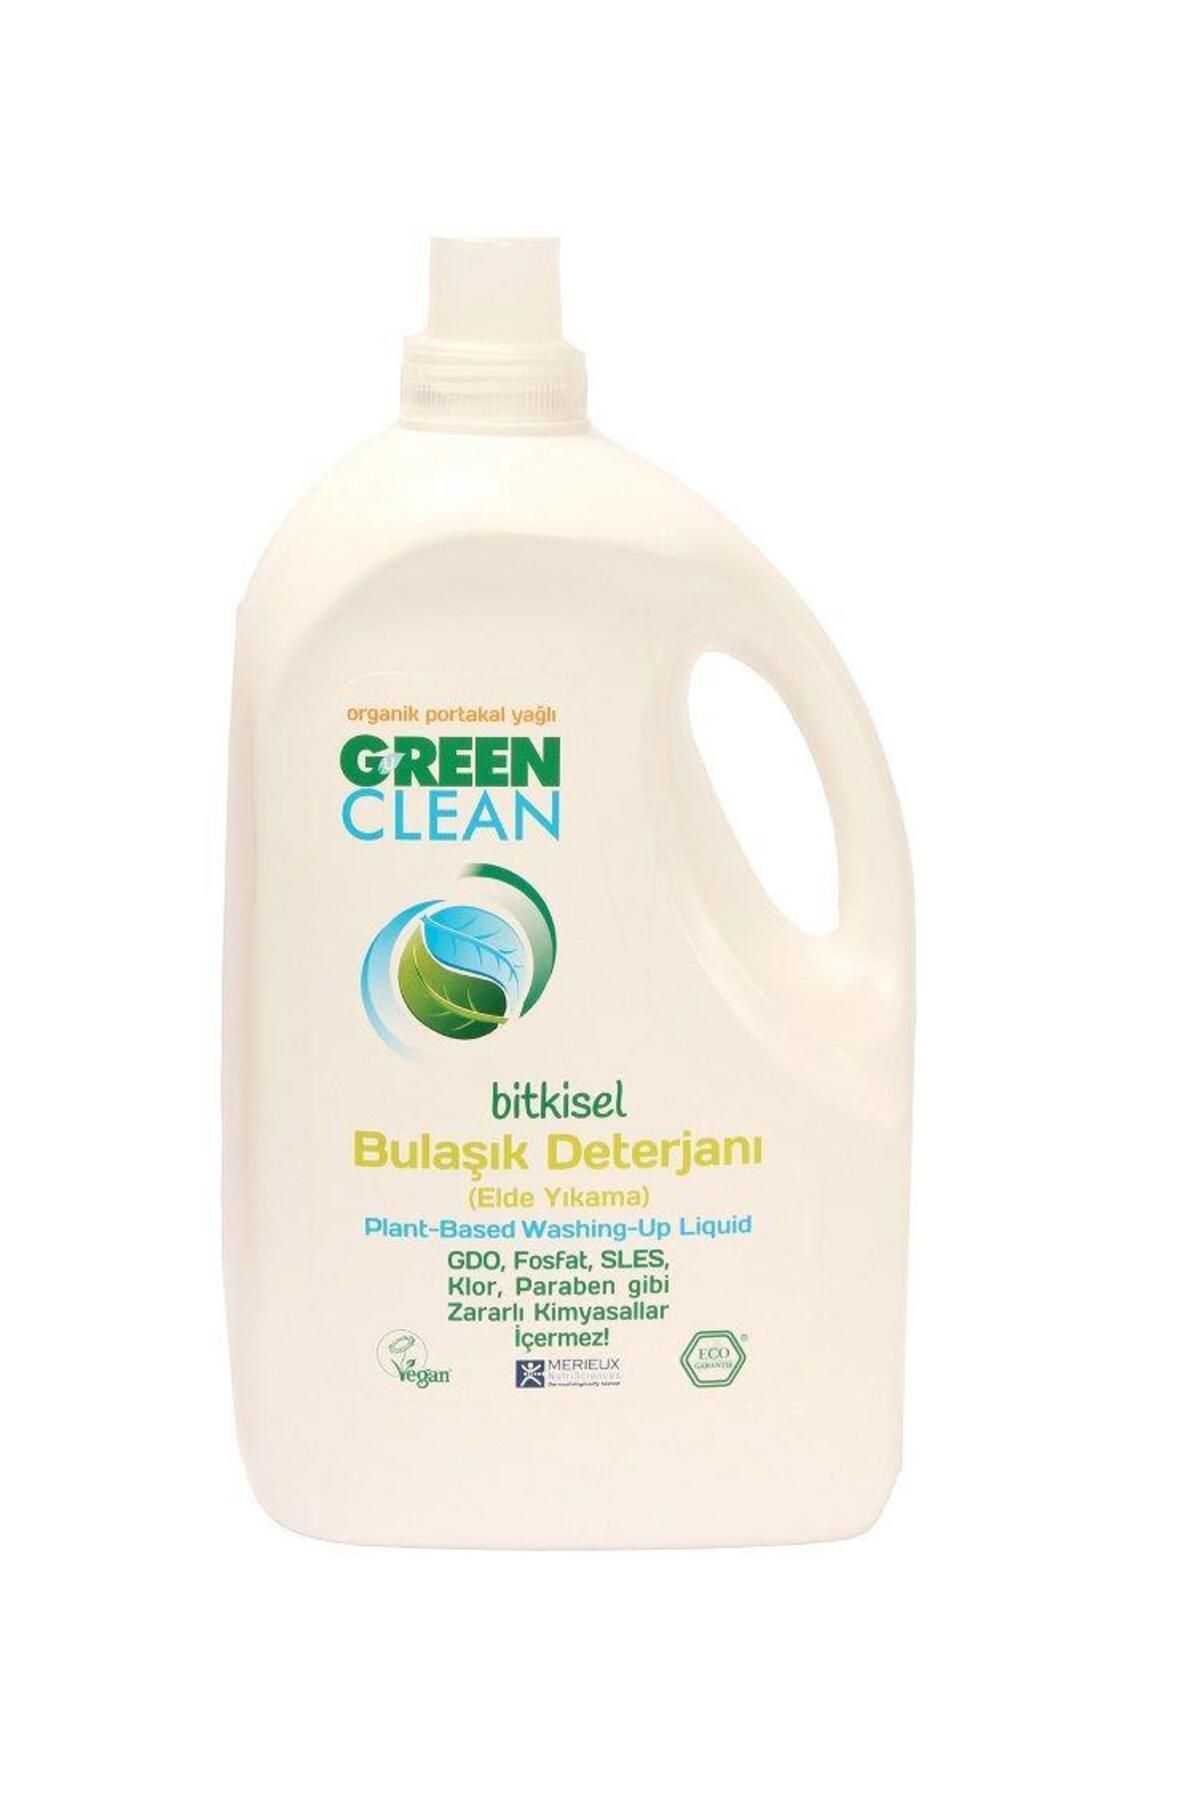 Green Clean Bitkisel Bulaşık Deterjanı Portakal Yağlı 2750 ml